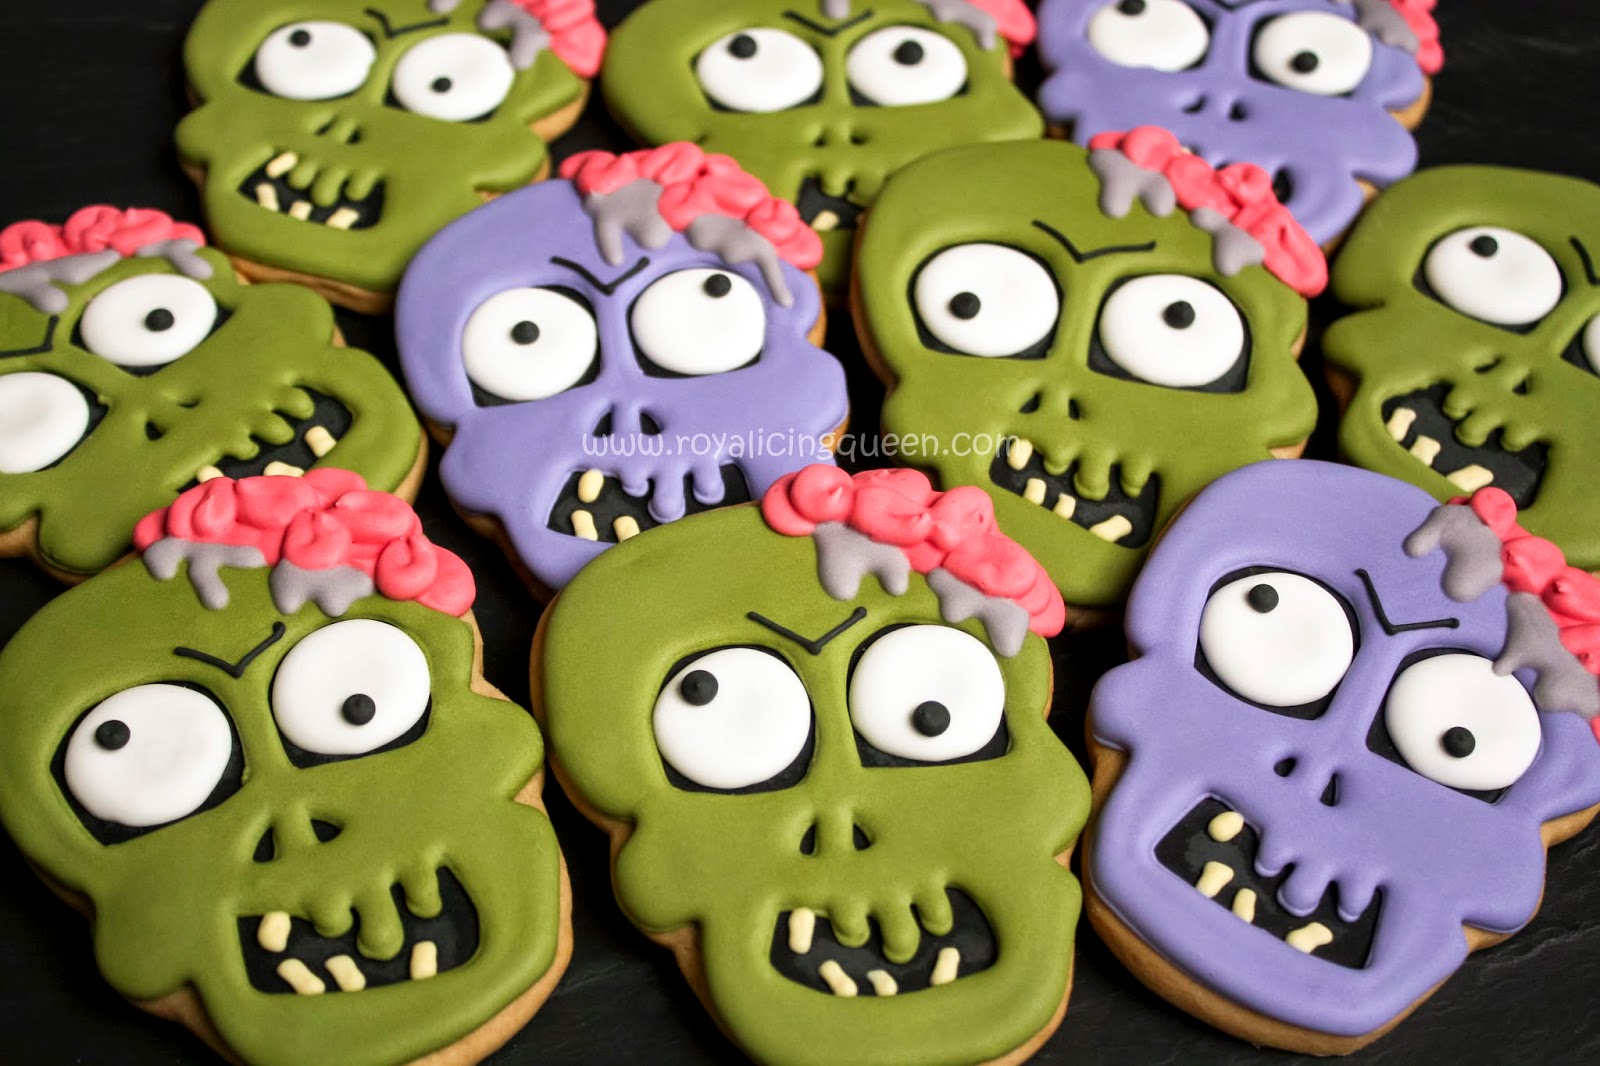 Résultat de recherche d'images pour "Cookie zombi"